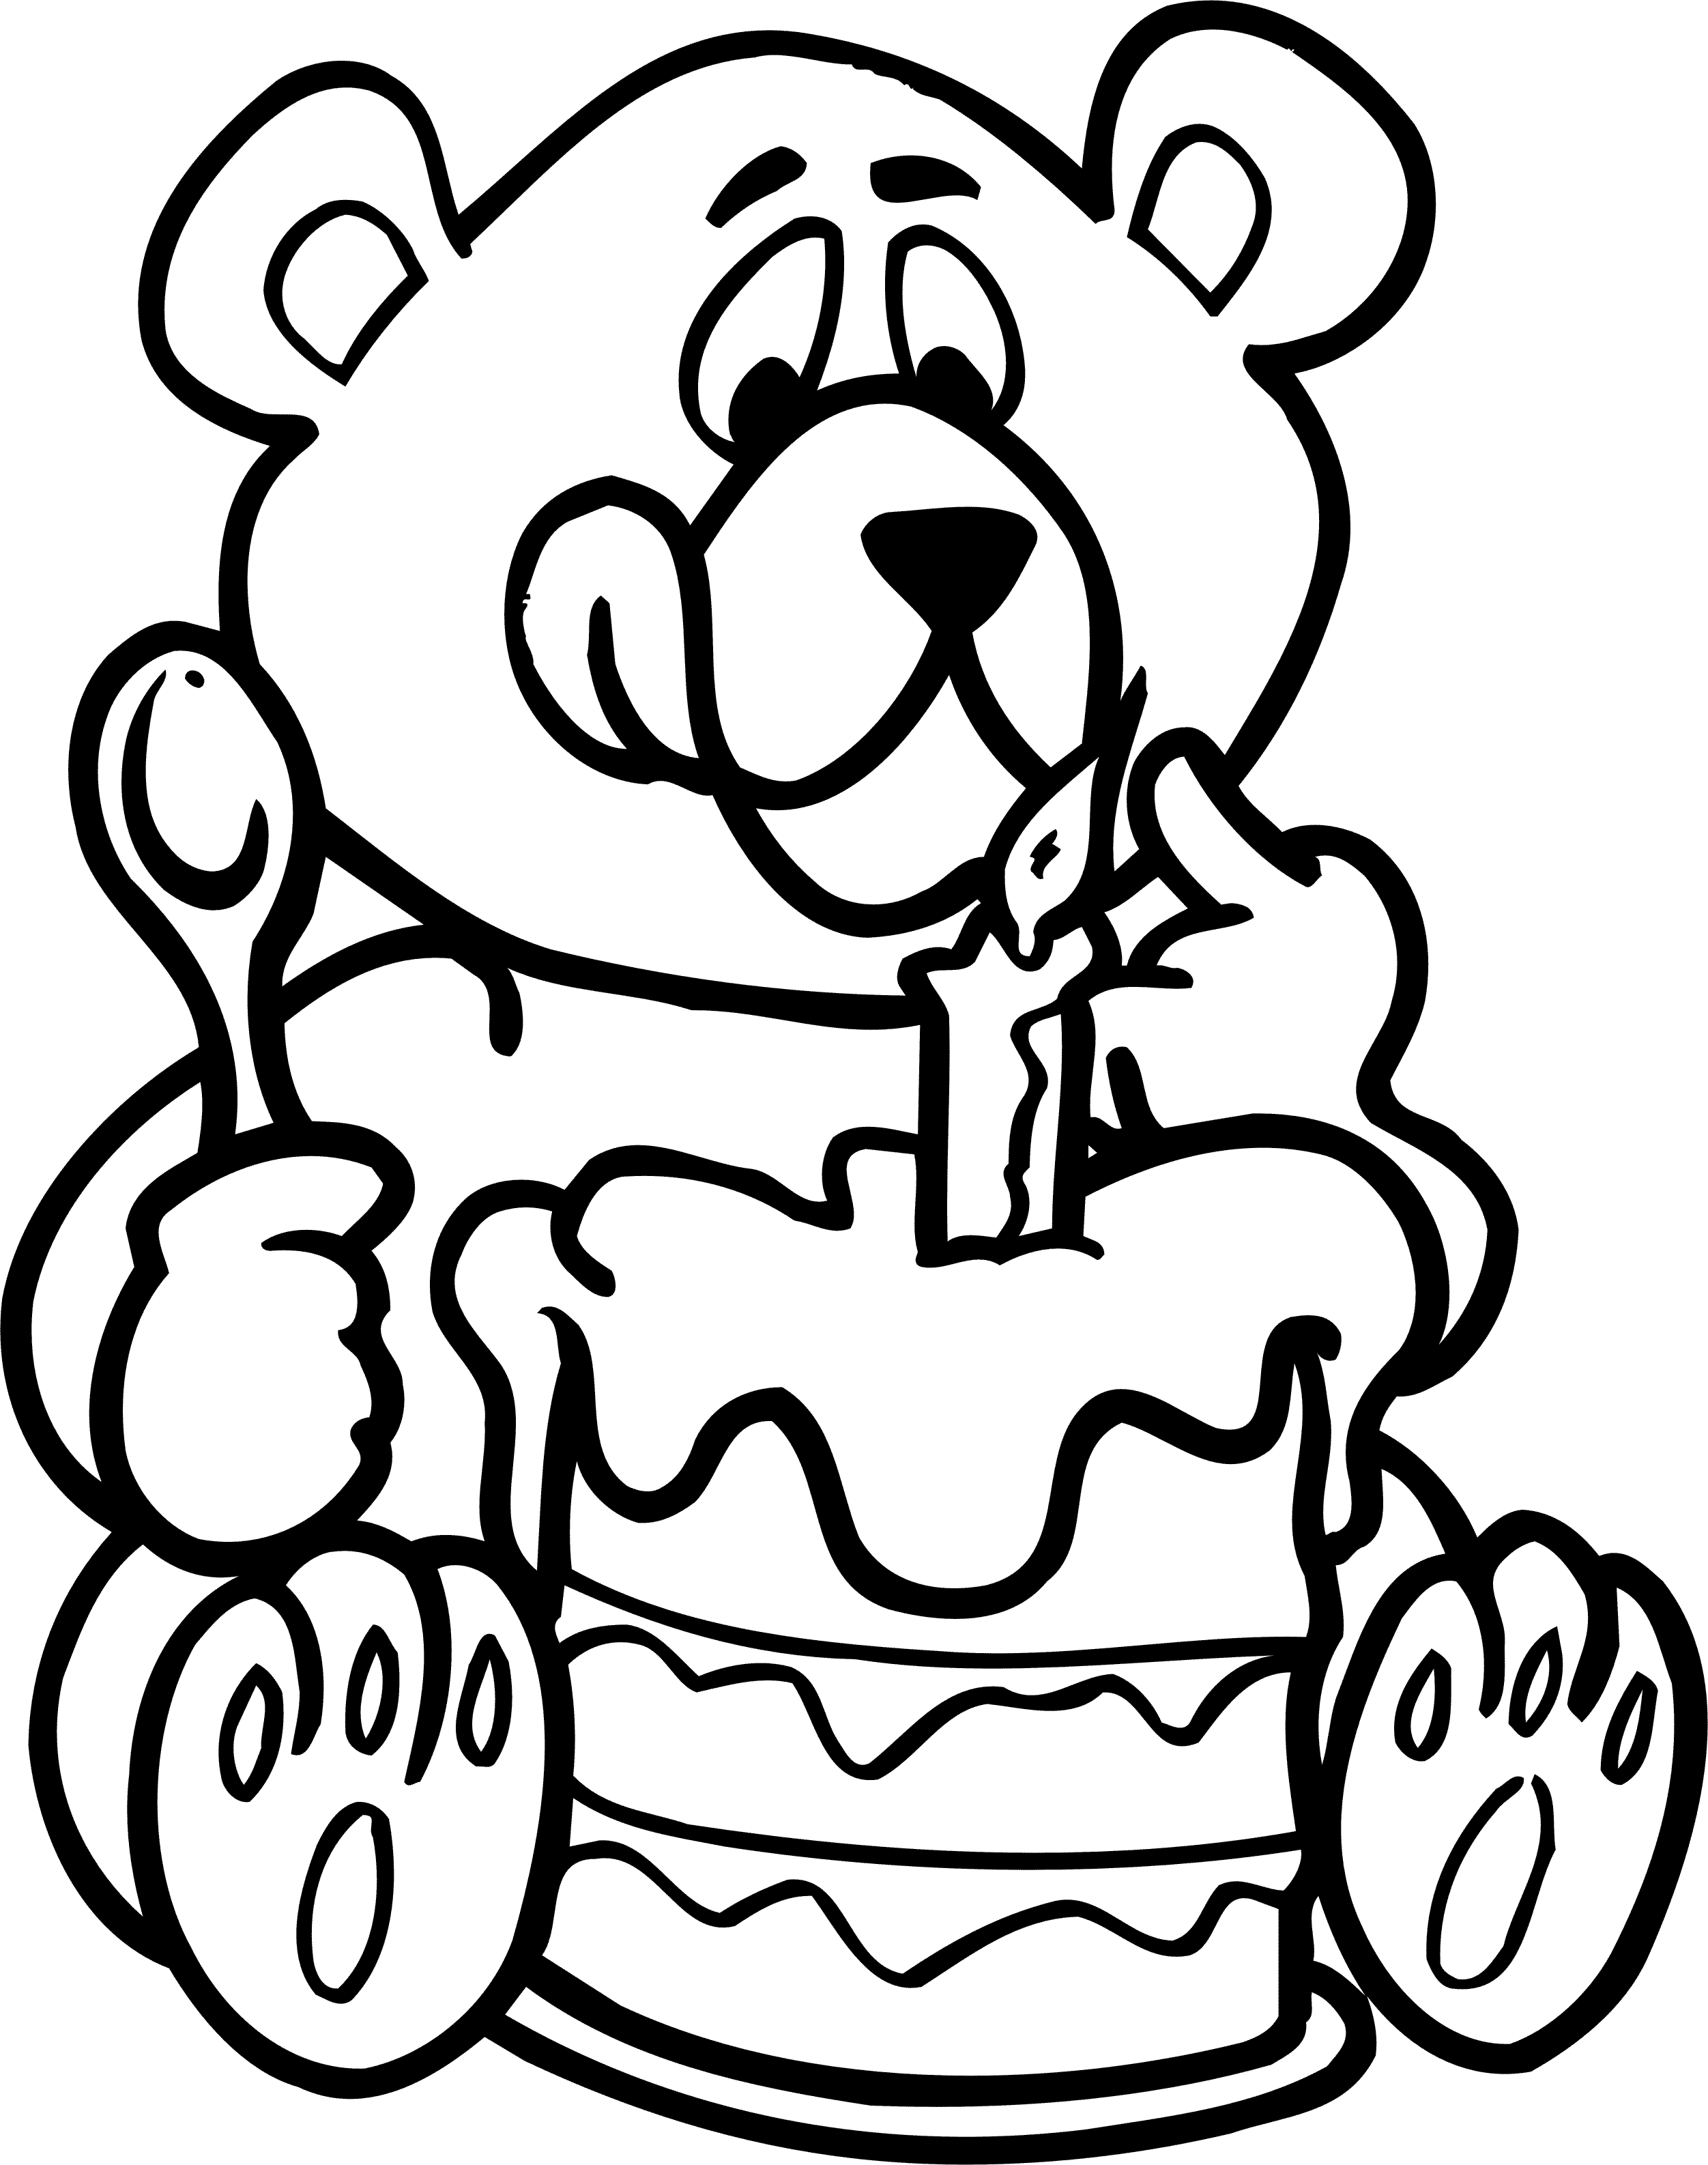 Рисовать рисунки на день рождения. Раскраска "с днем рождения!". Снём рождения раскраска. Ра краска с днем рождения. День рождения ИА раскраски.